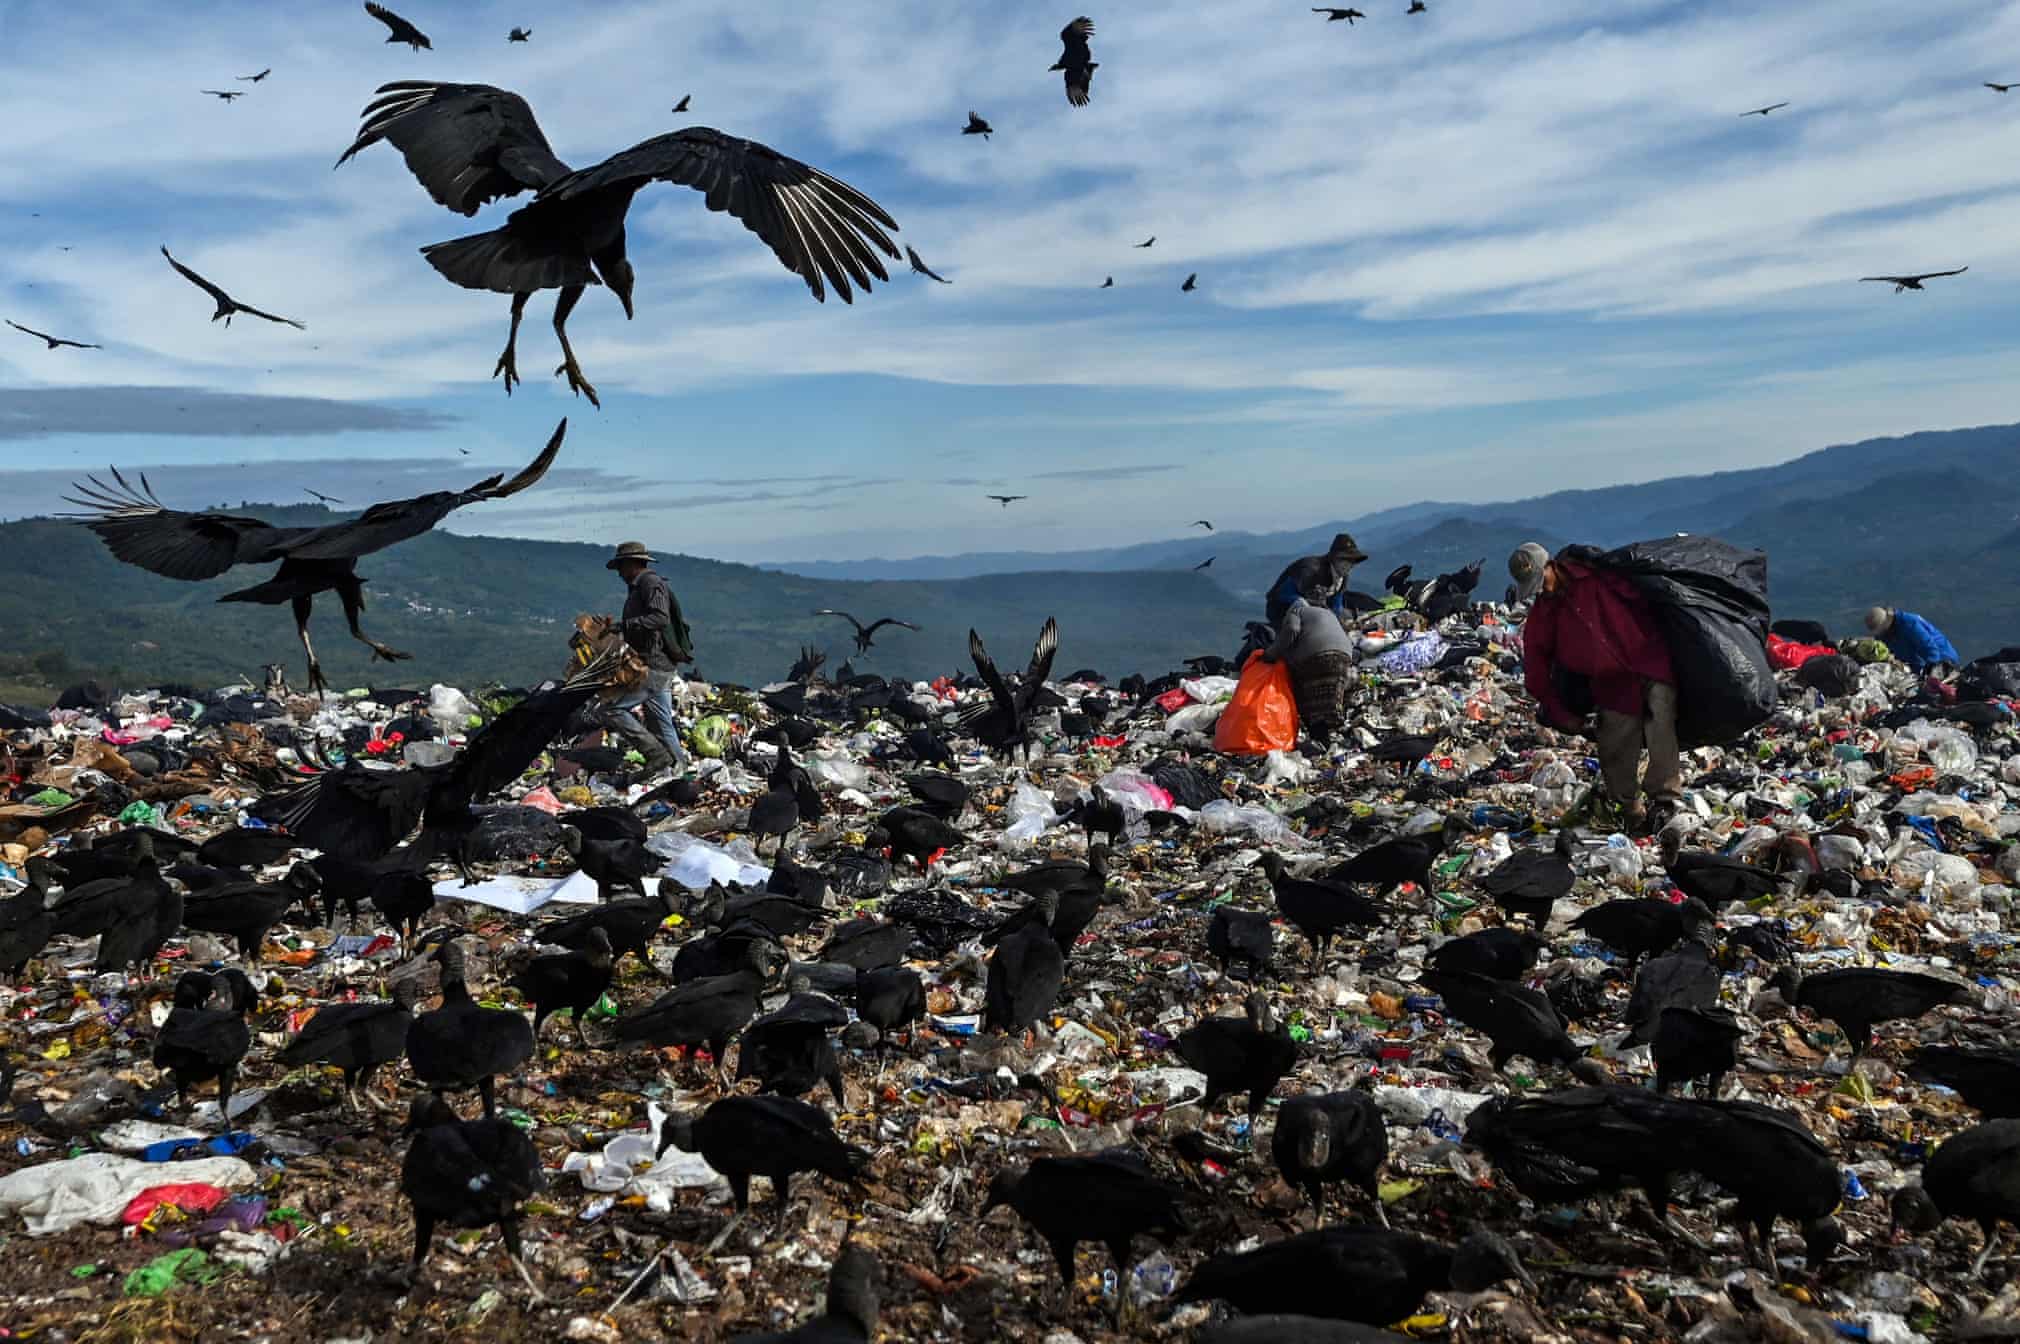 تجمع کرکس های سیاه روی زباله ها در هندوراس